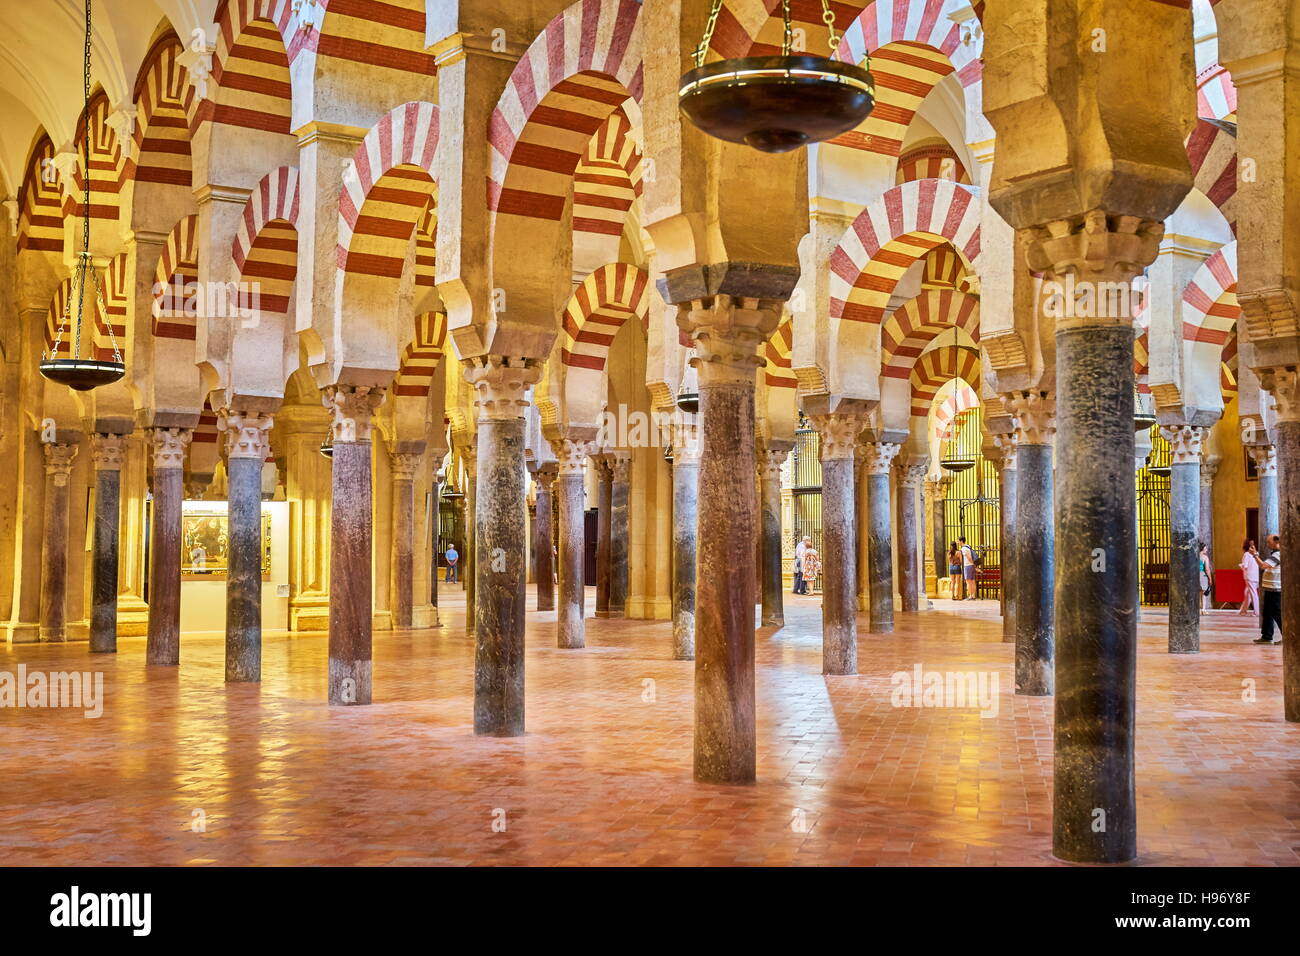 Espagne - l'intérieur de la Mezquita (Mosquée Cathédrale), Cordoue, Andalousie Banque D'Images